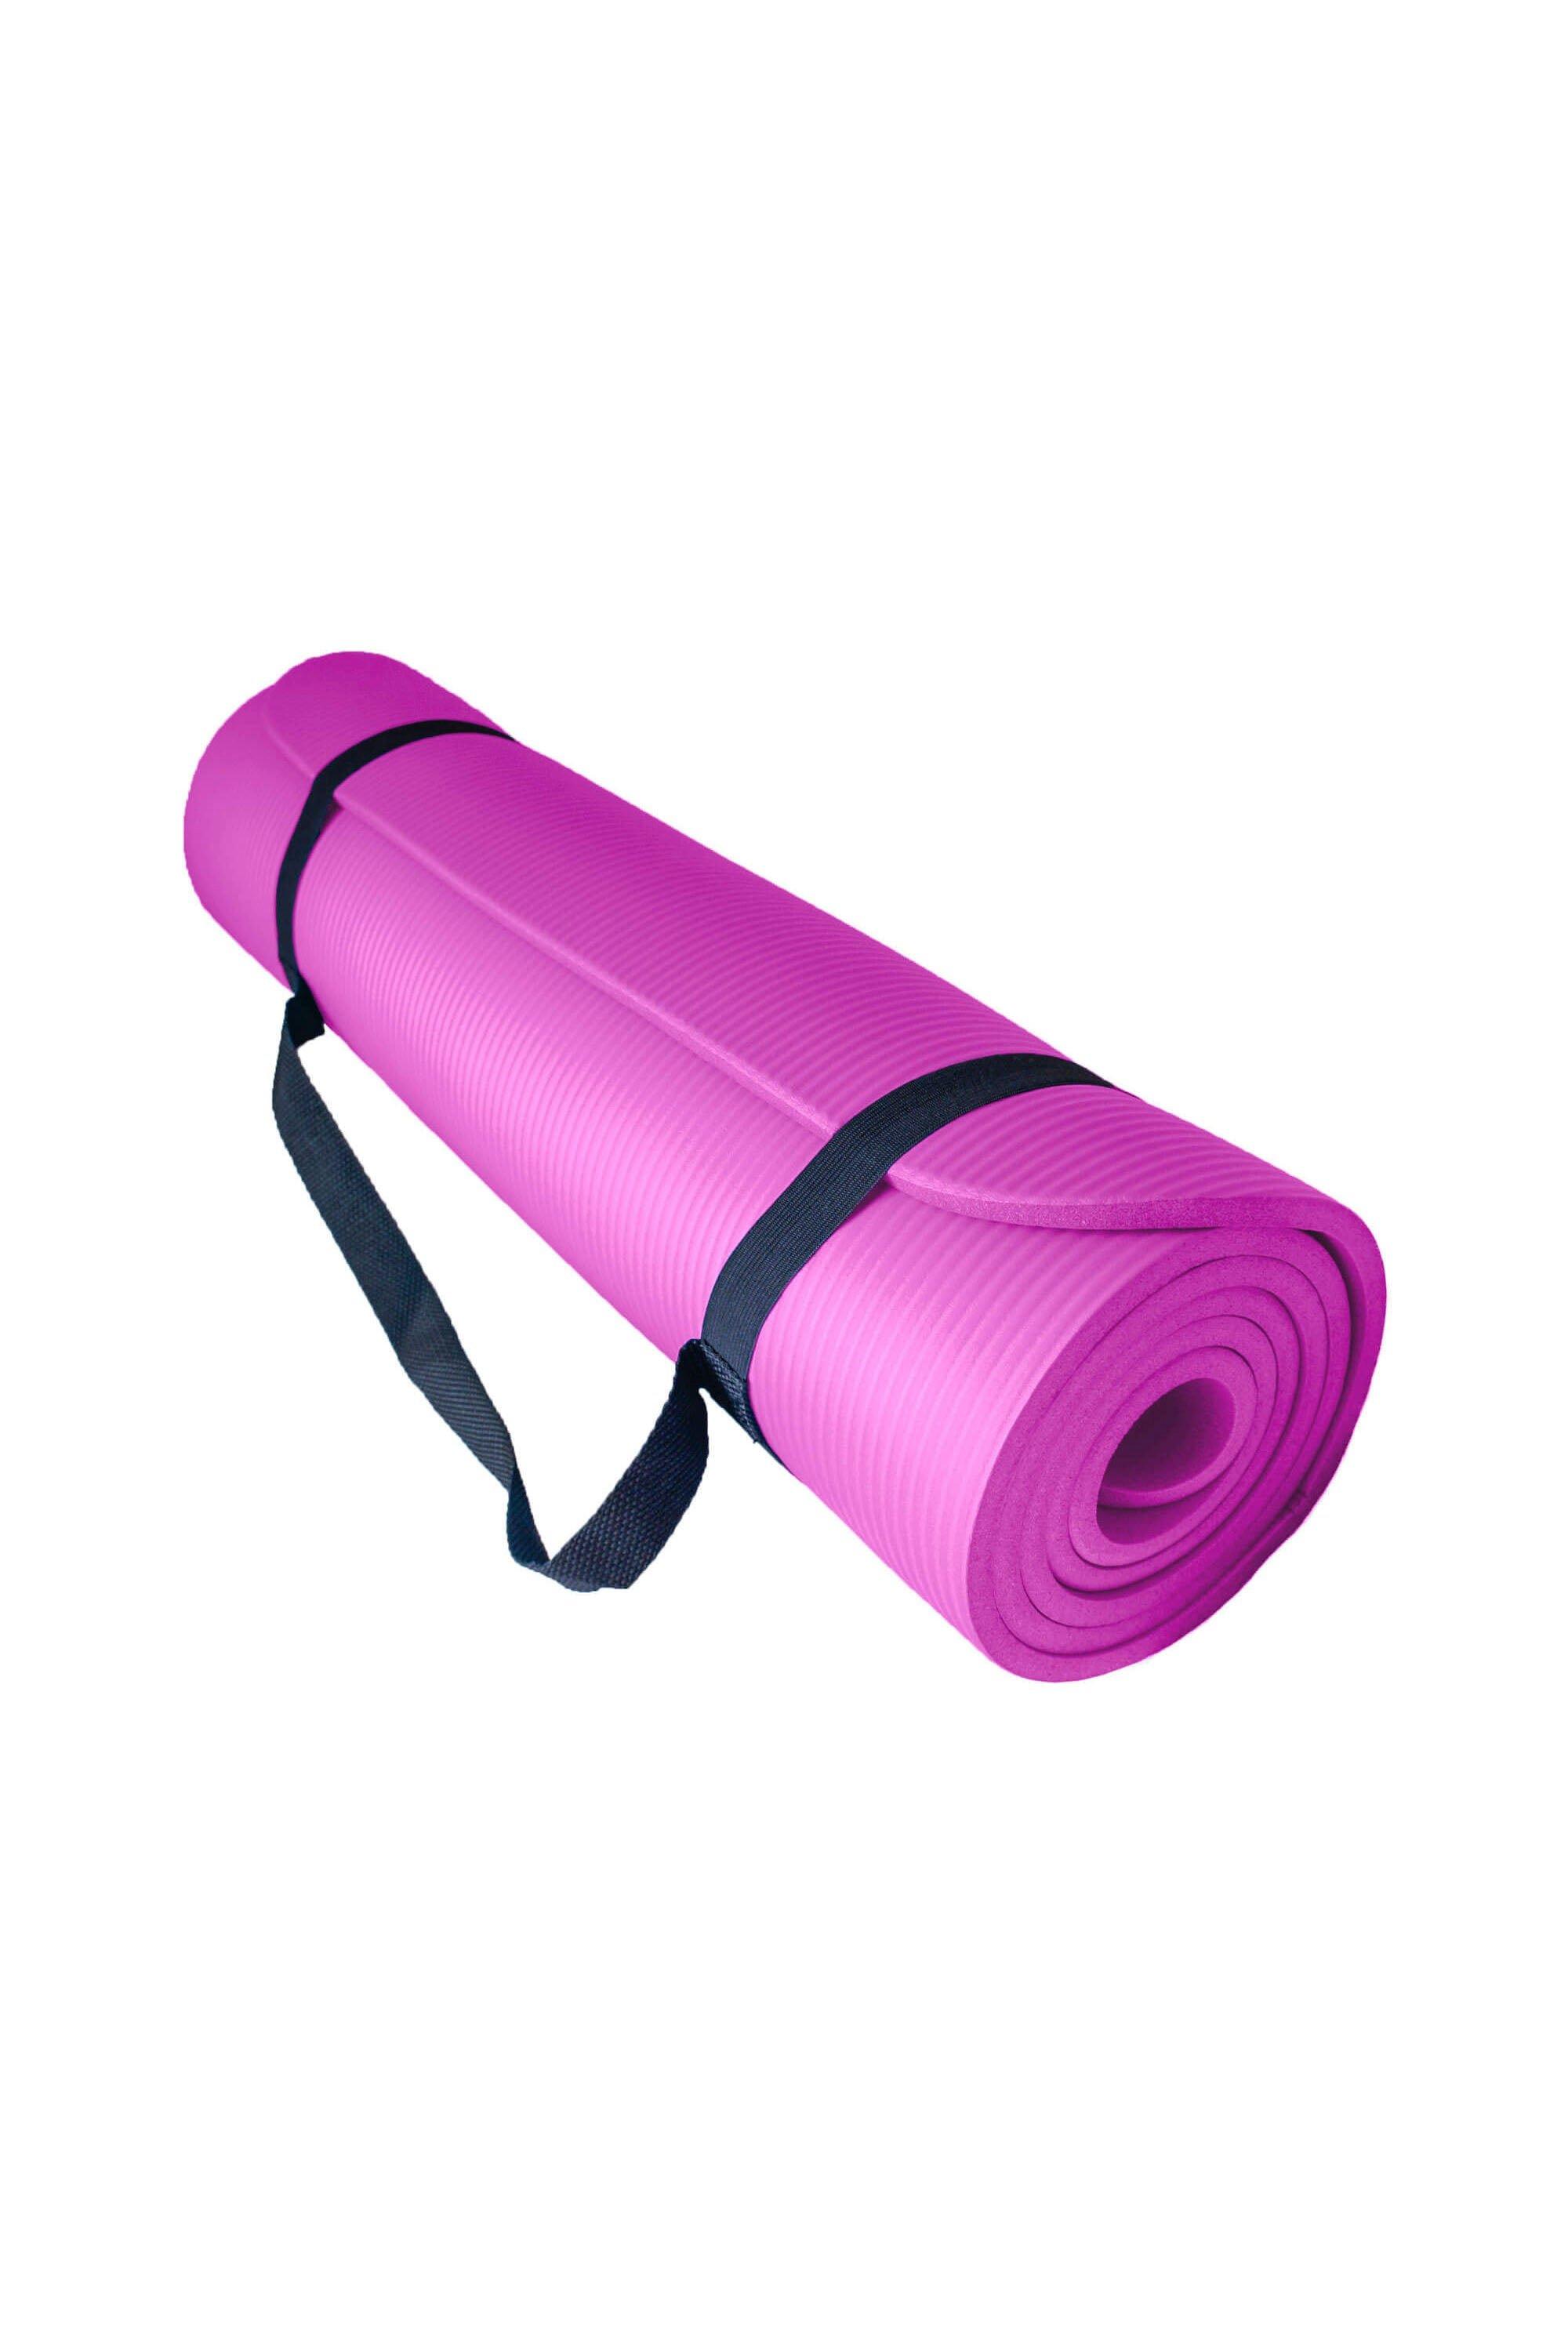 Мягкий коврик для упражнений для йоги с воздушным потоком 10 мм Azure, розовый эспандер для йоги пилатеса женский эспандер для упражнений для дома